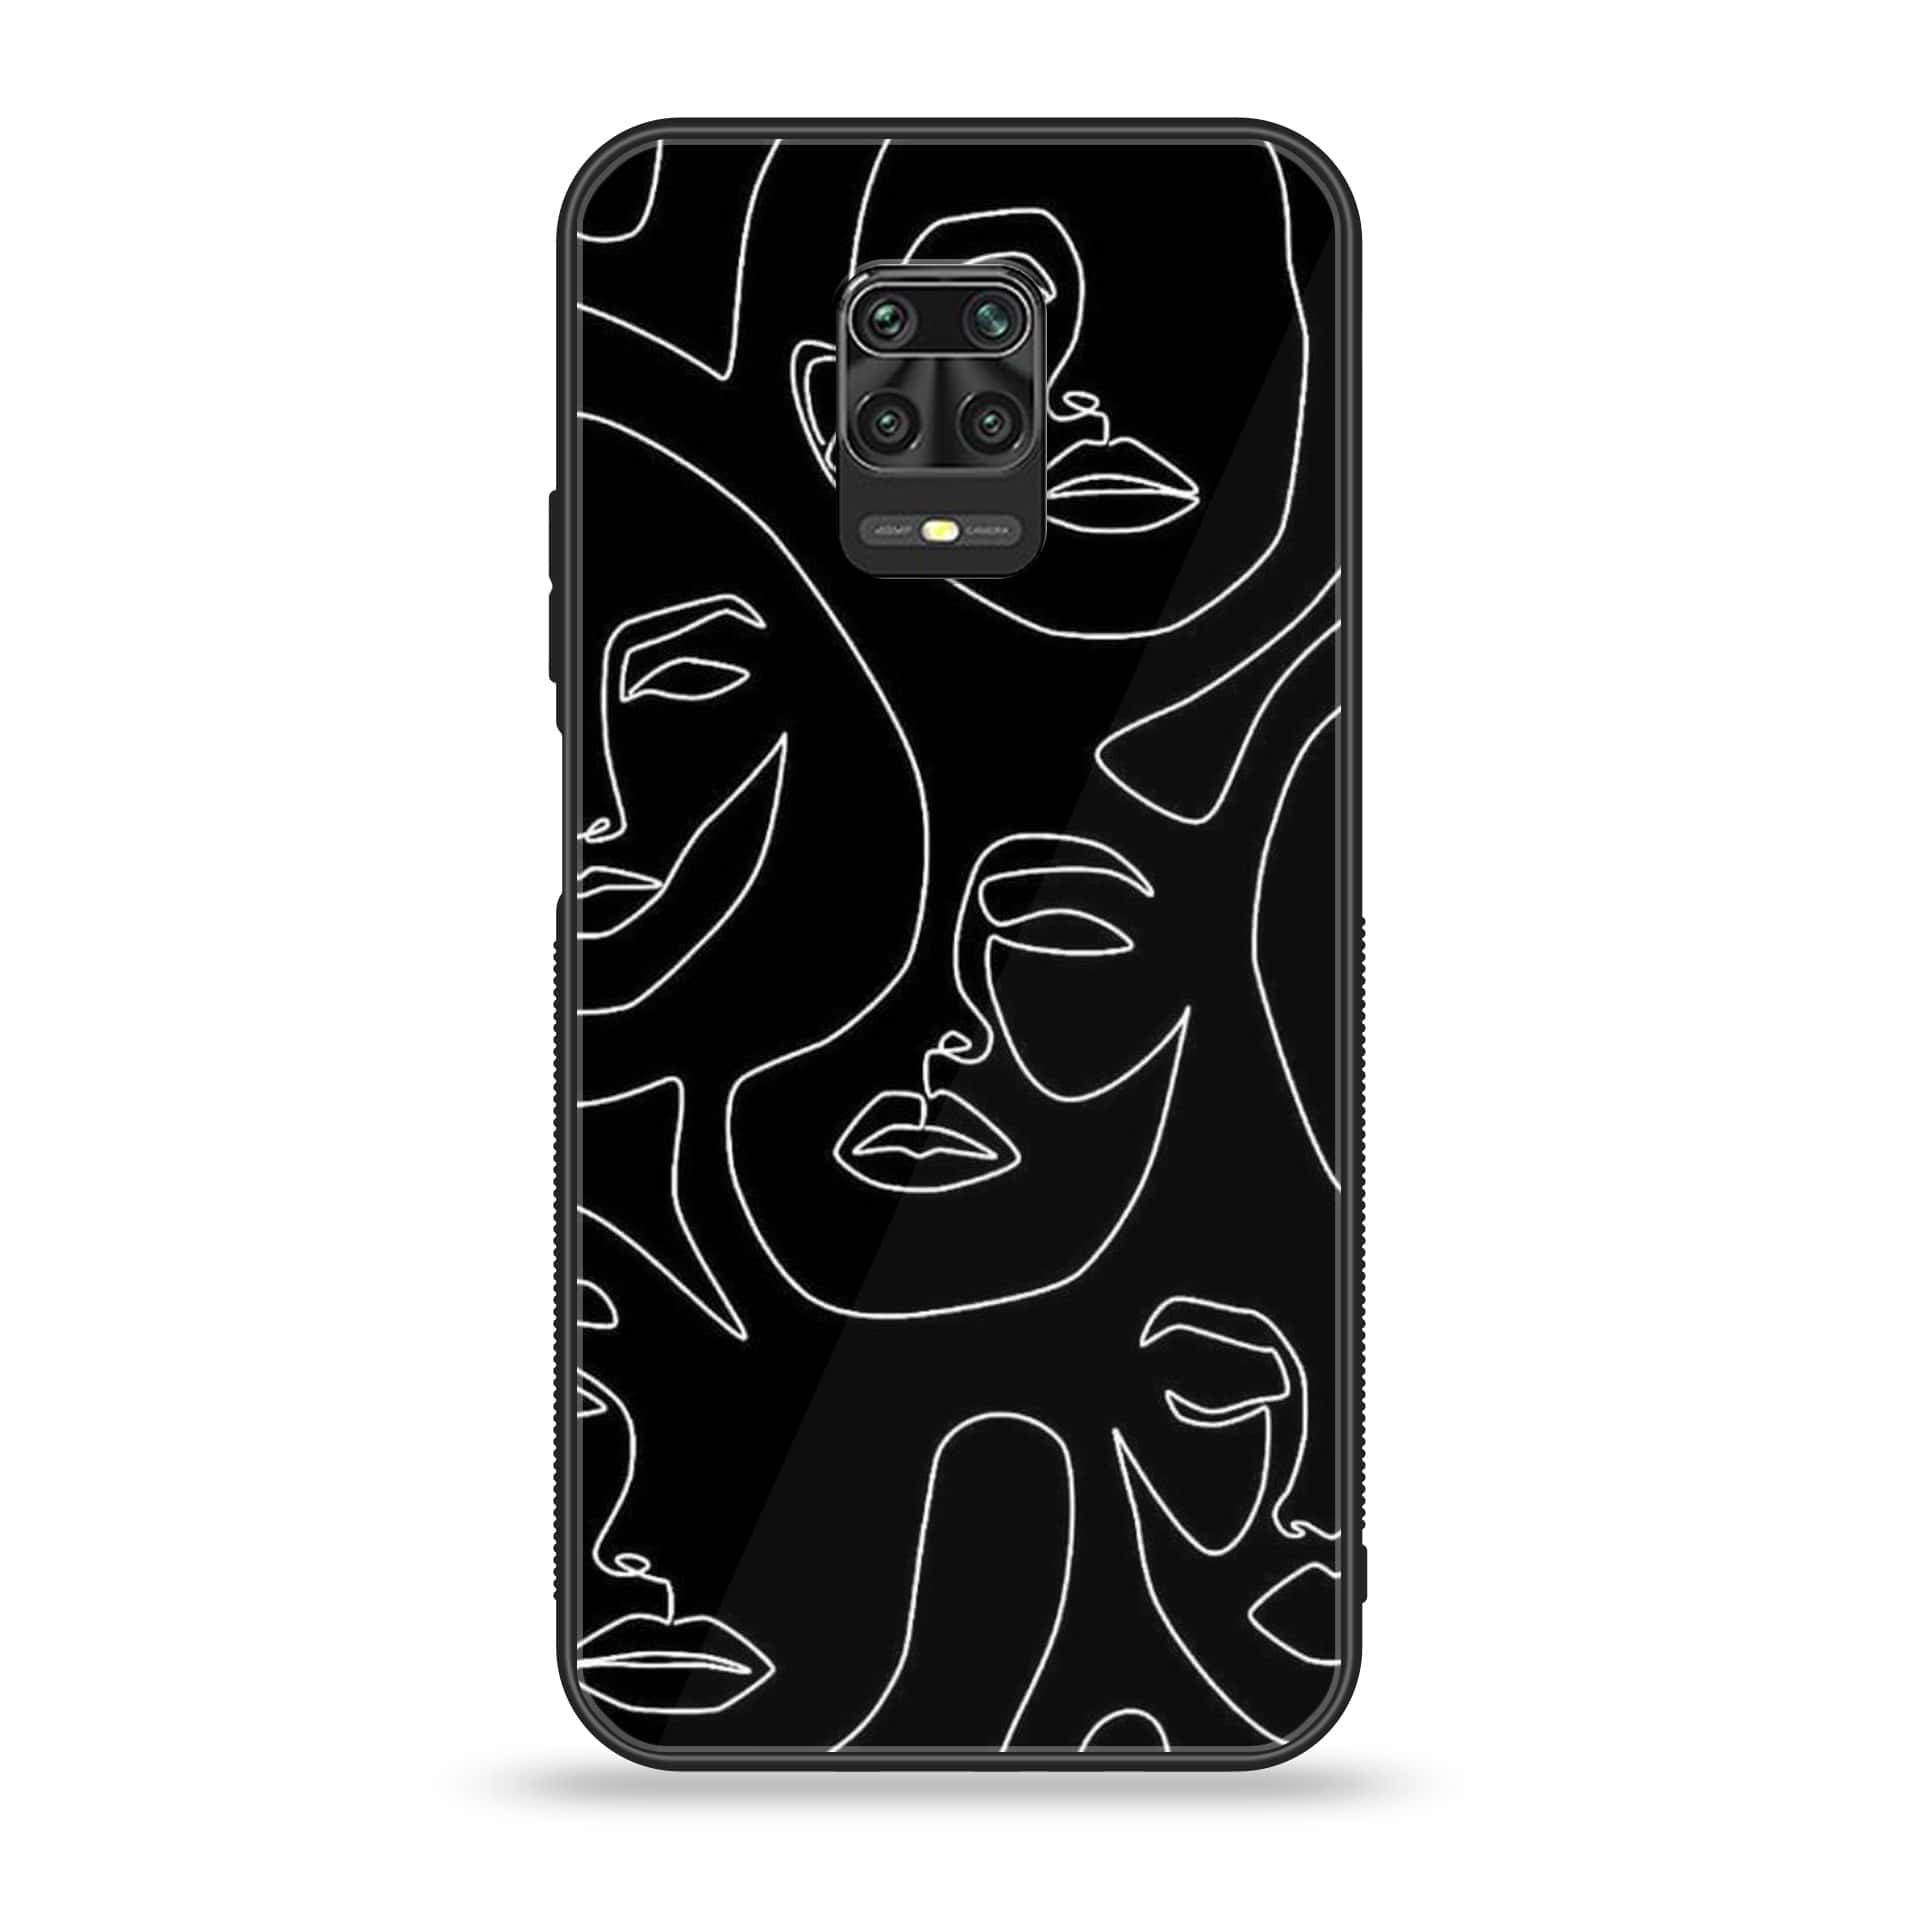 Xiaomi Redmi Note 9S - Girls Line Art Series - Premium Printed Glass soft Bumper shock Proof Case